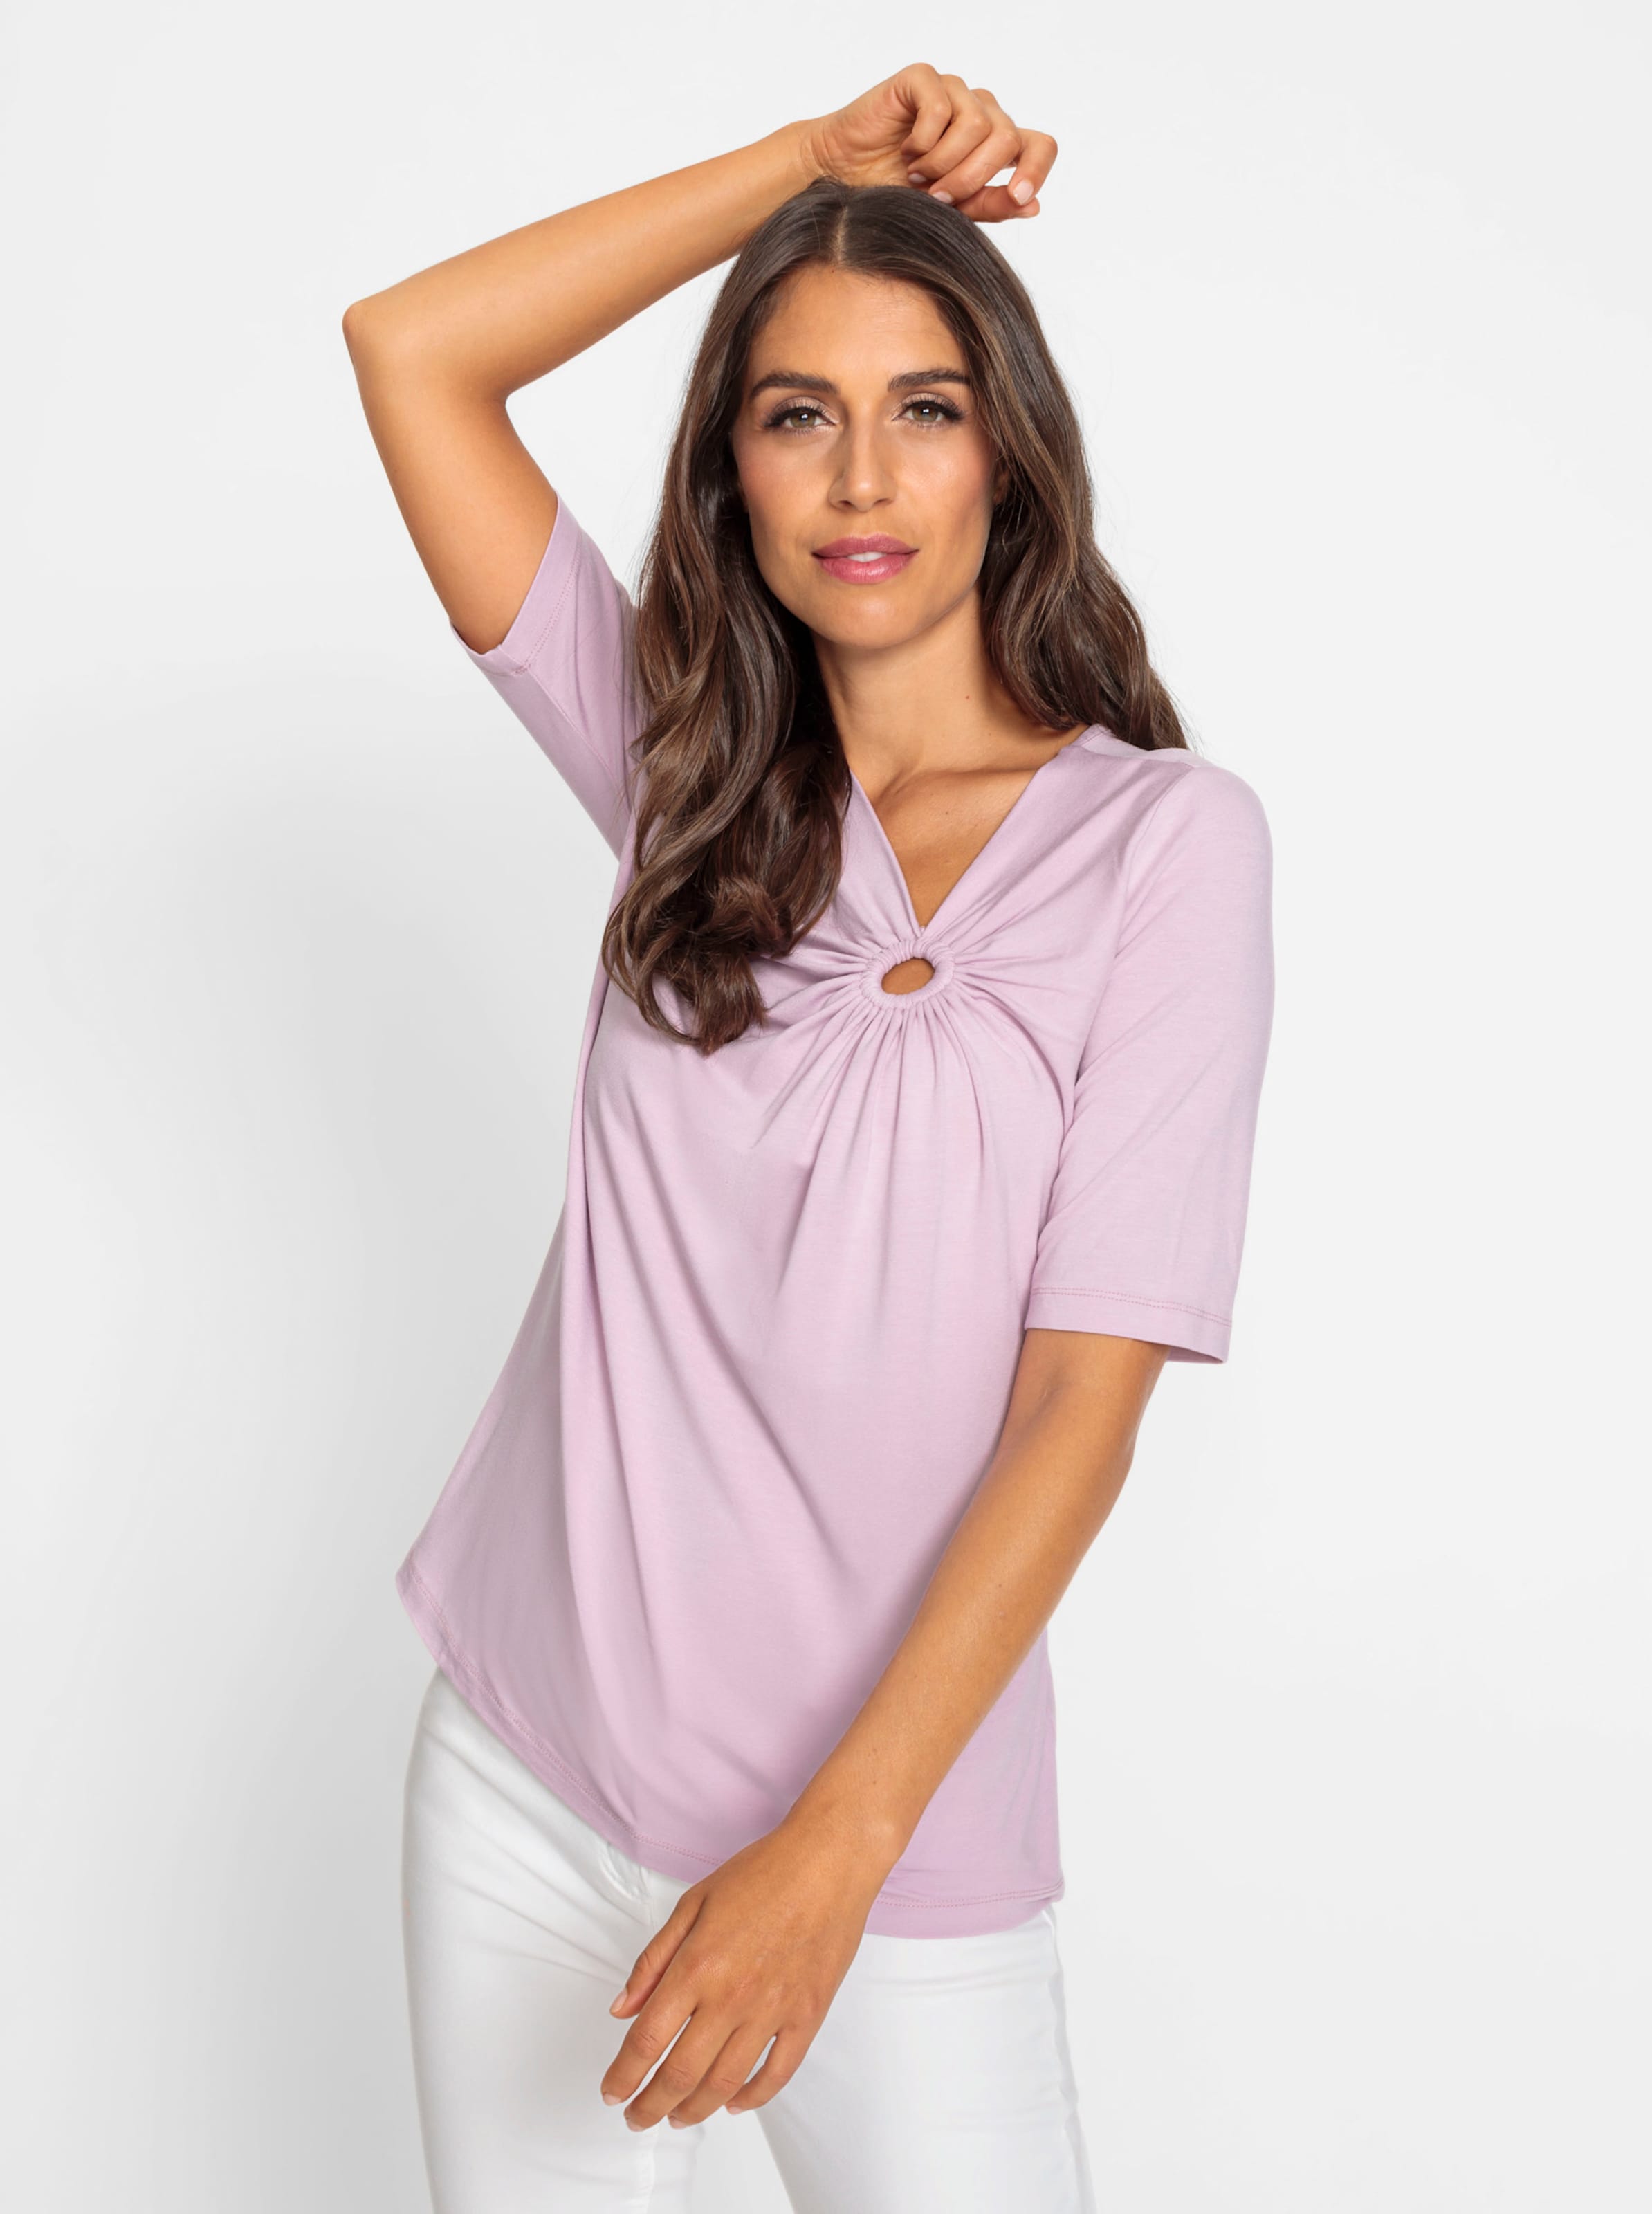 Moderner günstig Kaufen-Shirt in rosé von heine. Shirt in rosé von heine <![CDATA[Shirt Vielseitig kombinierbarer Style in weich fließender Viskose-Qualität. Moderner, asymmetrischer V-Ausschnitt mit effektvoller Raffung. Etwas längerer Halbarm.]]>. 